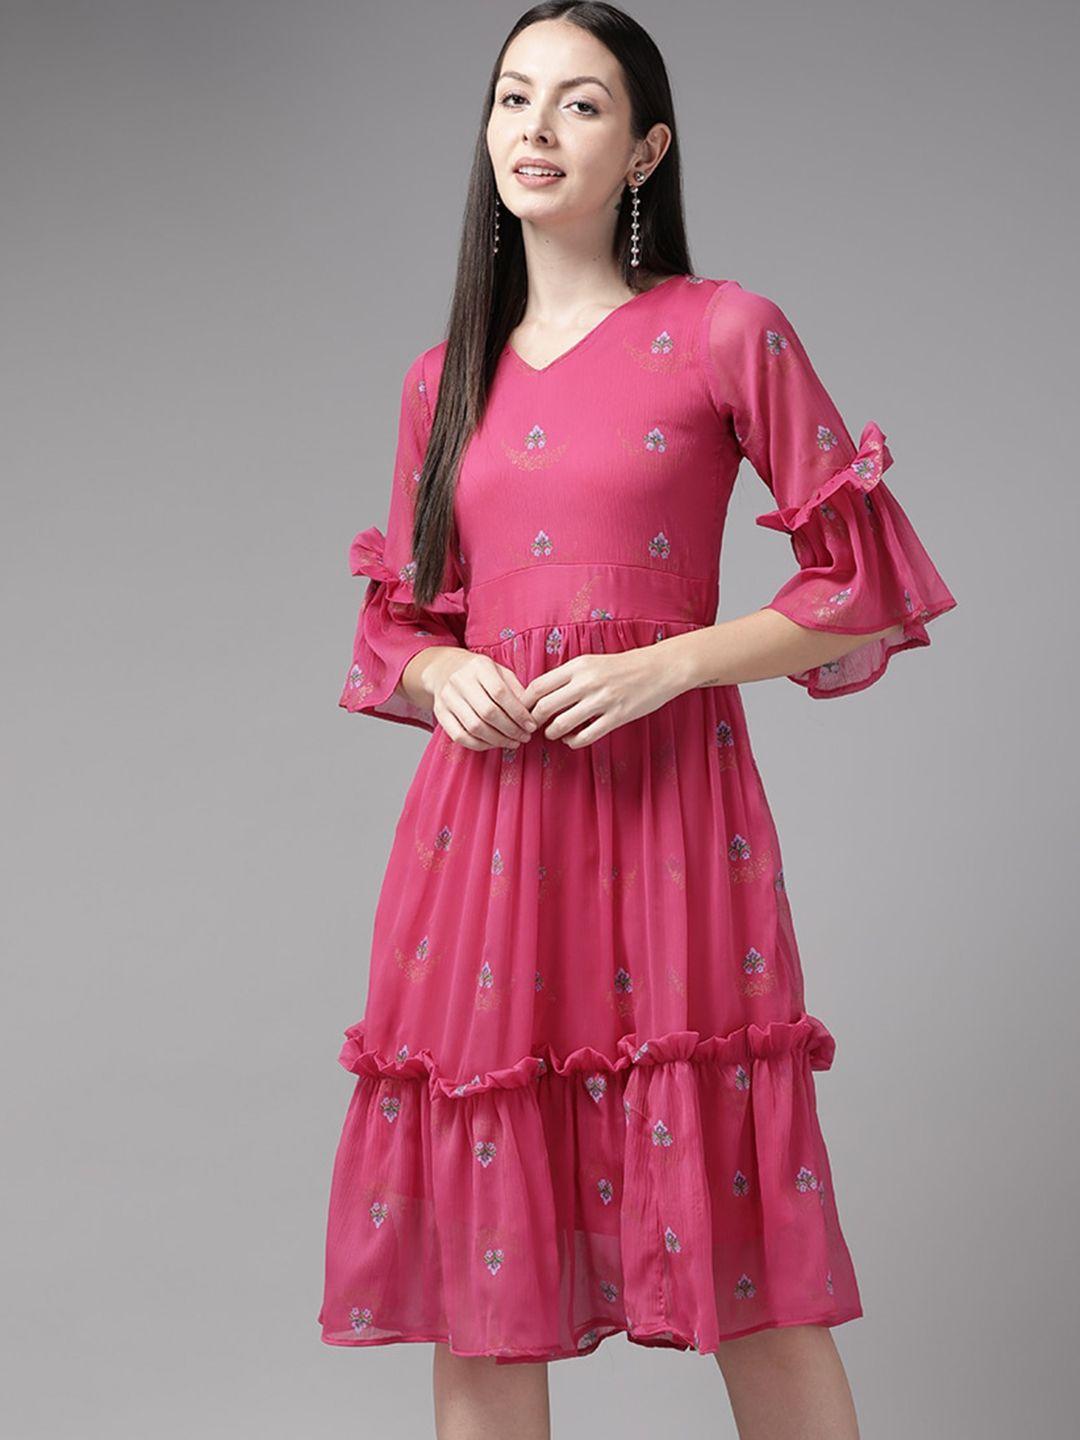 aarika-georgette-peplum-dress